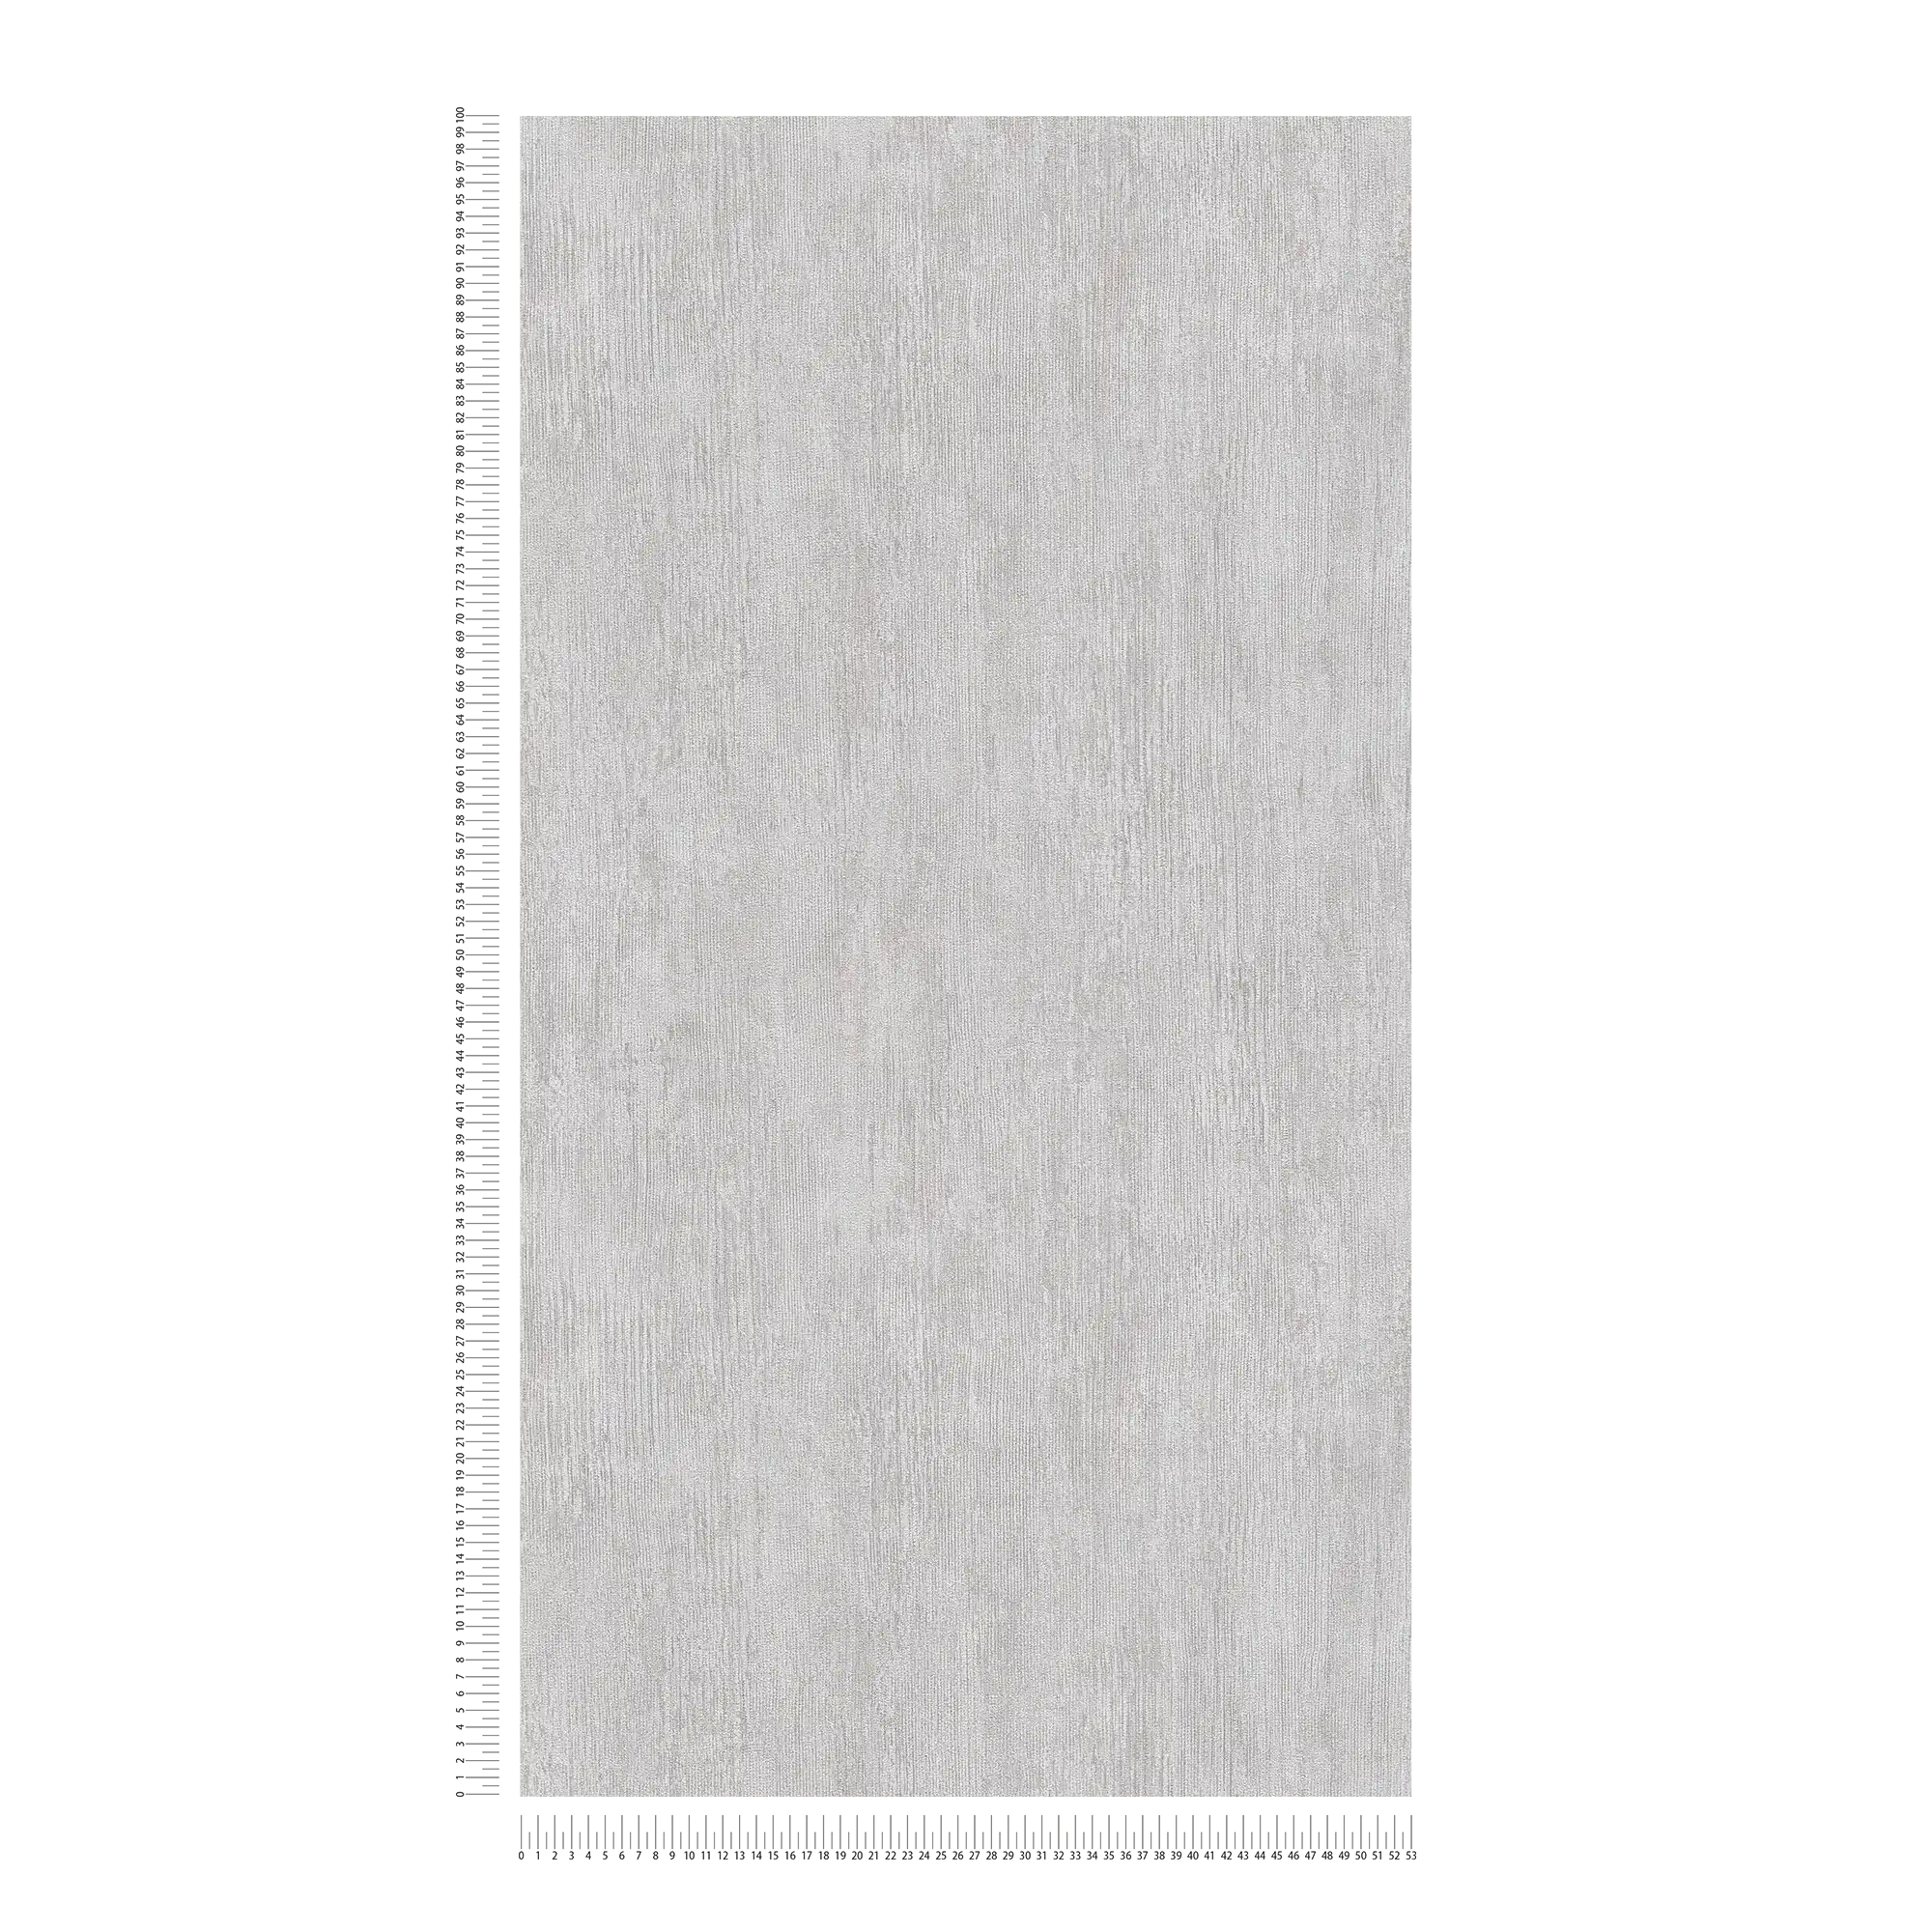             Papel pintado de diseño acanalado, estilo industrial - gris, blanco
        